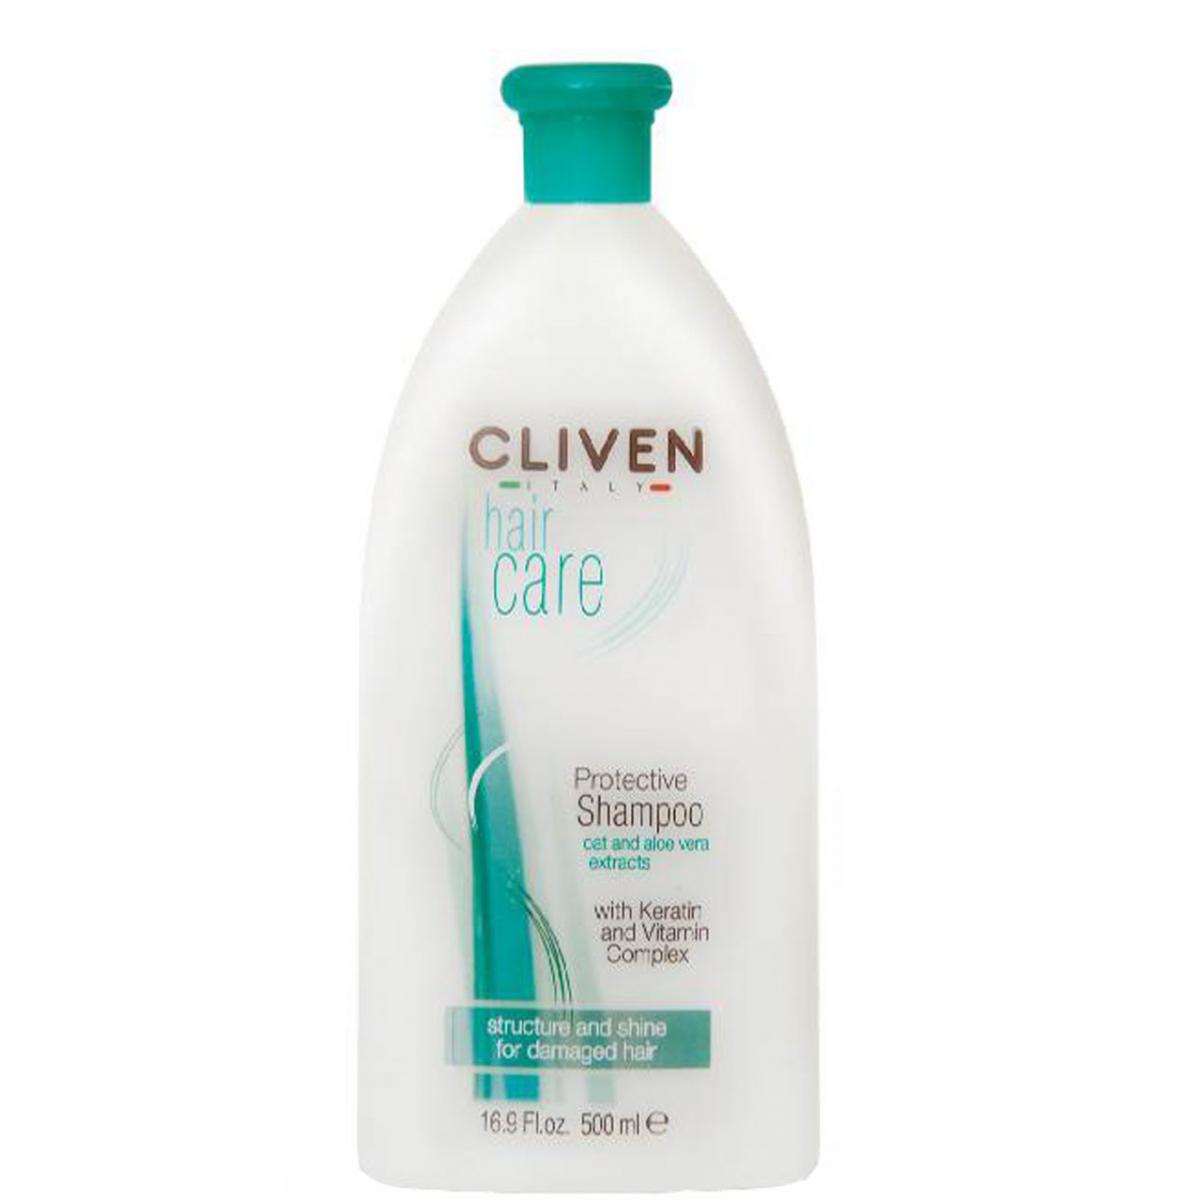 شامپو محافظت کننده مناسب موهای آسیب دیده  - Protective Shampoo For Damaged Hair